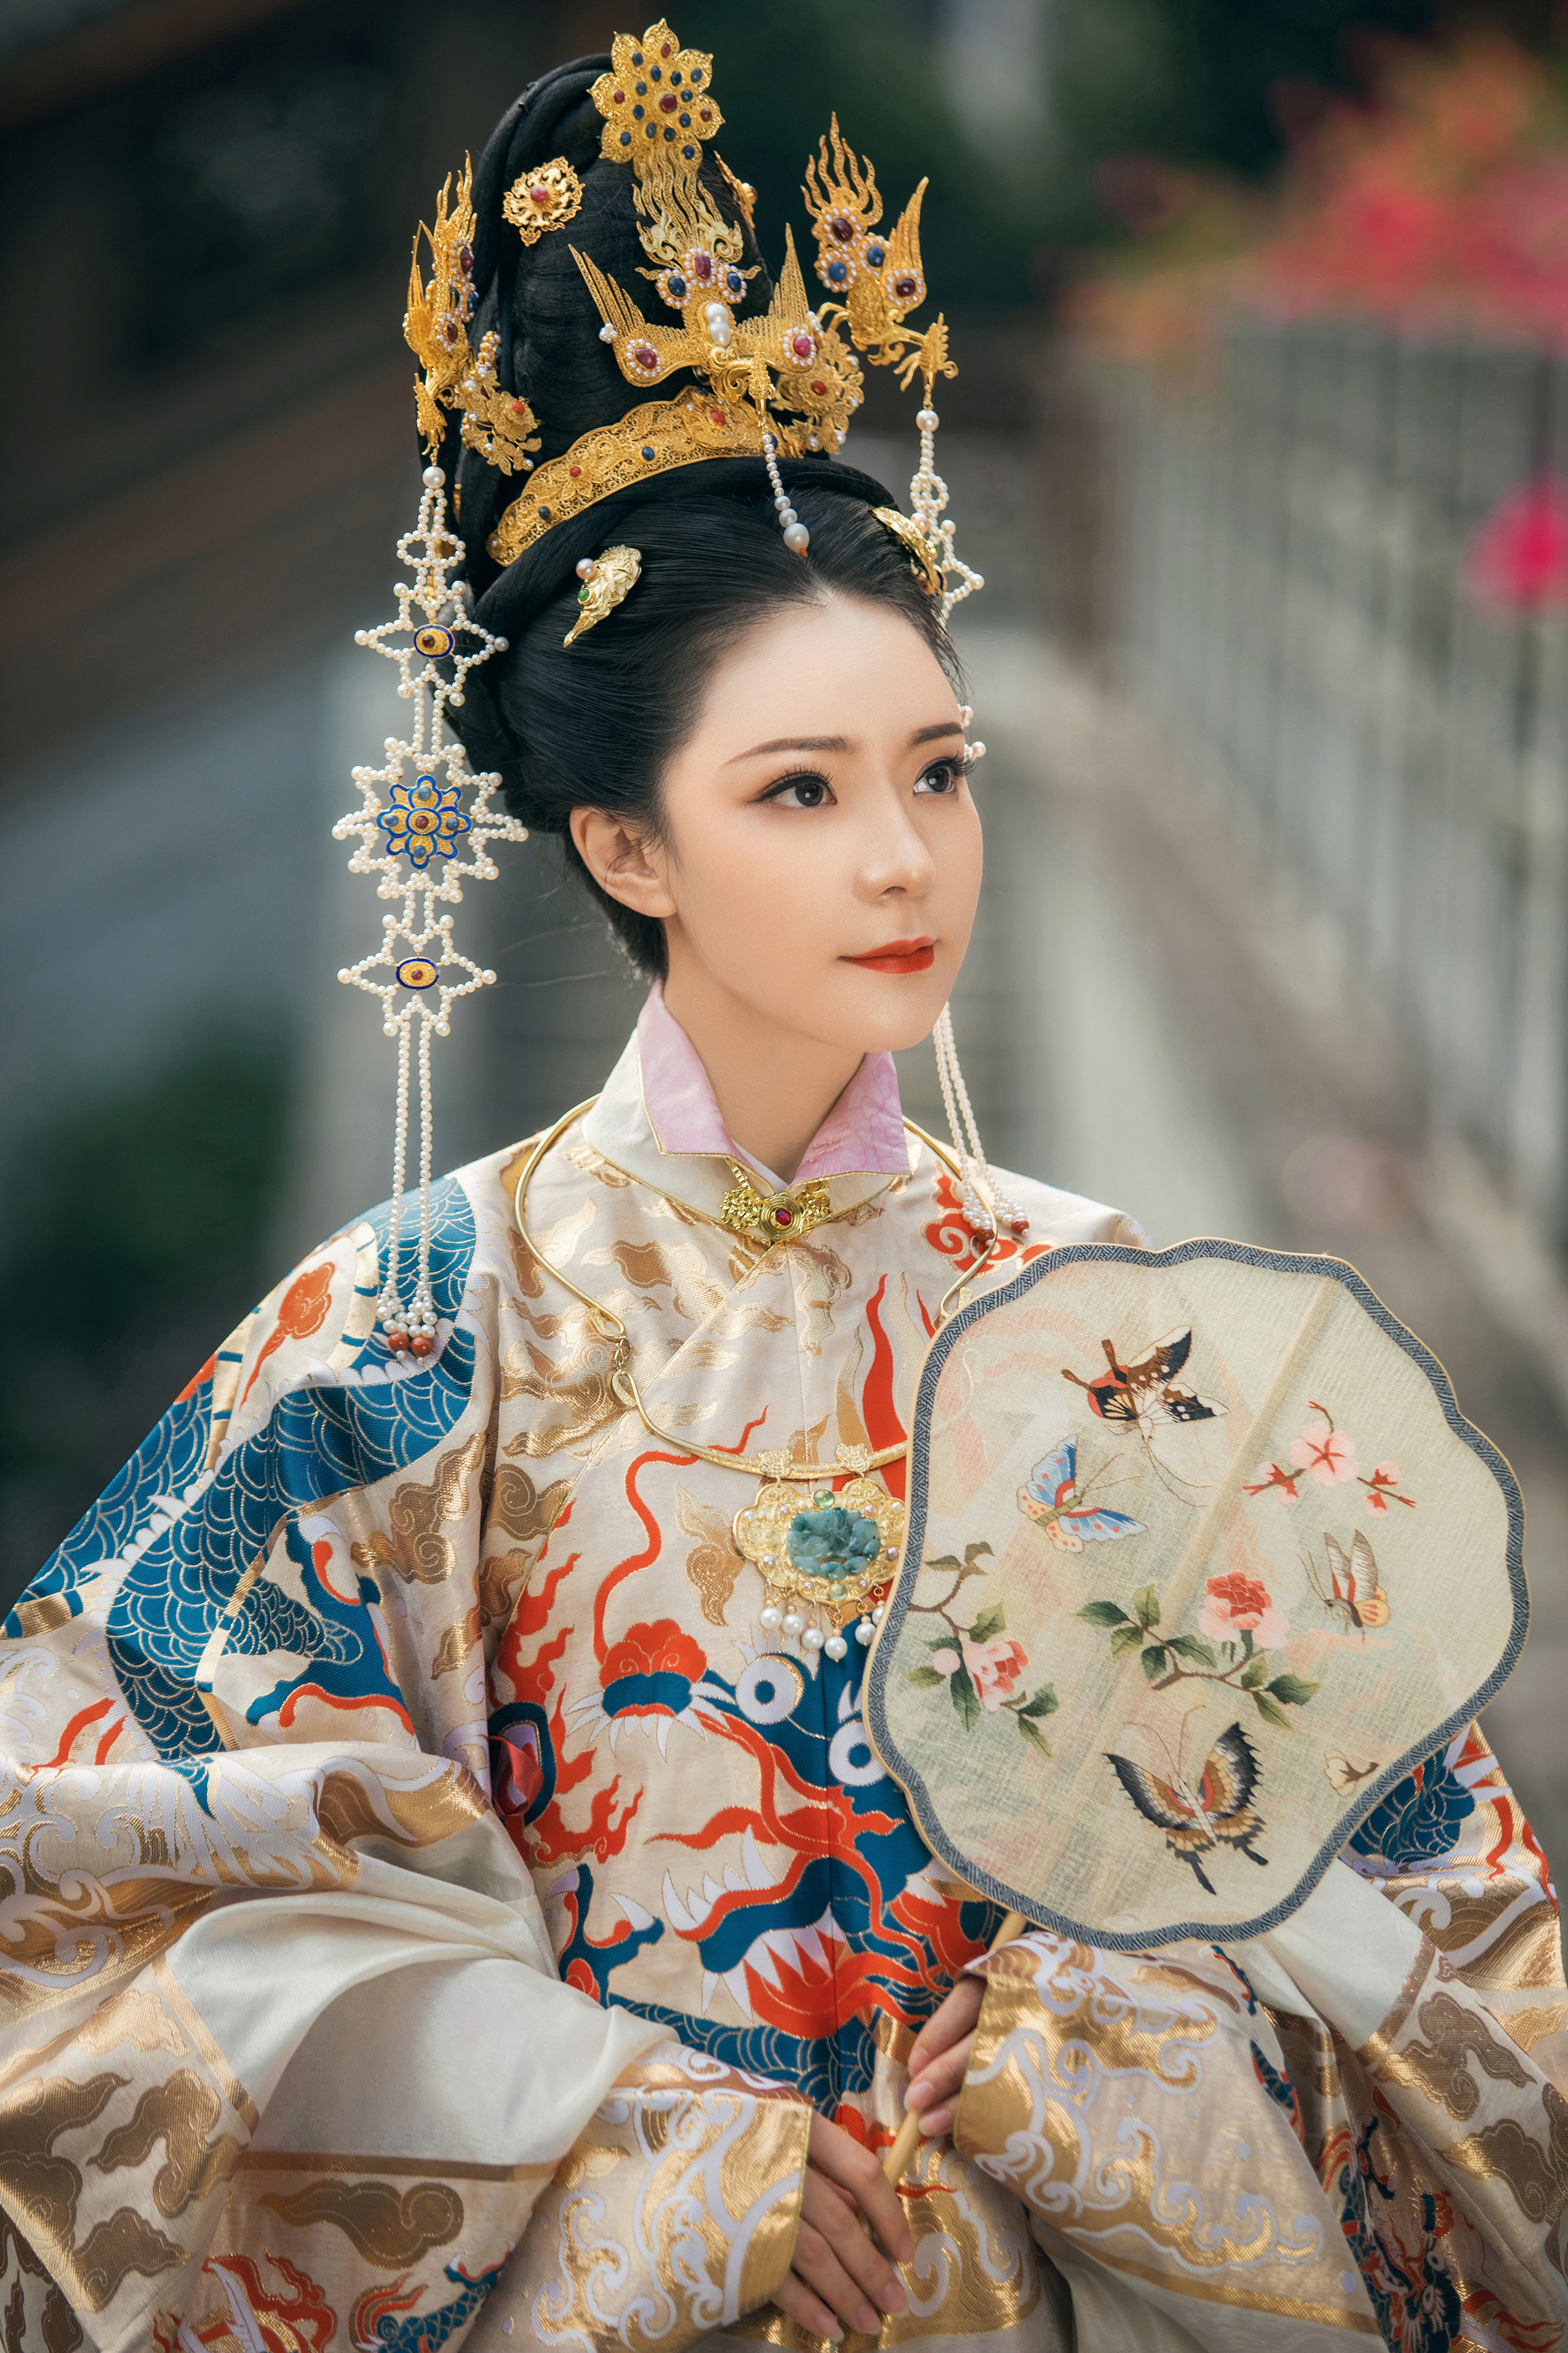 明代贵族女子服饰图片